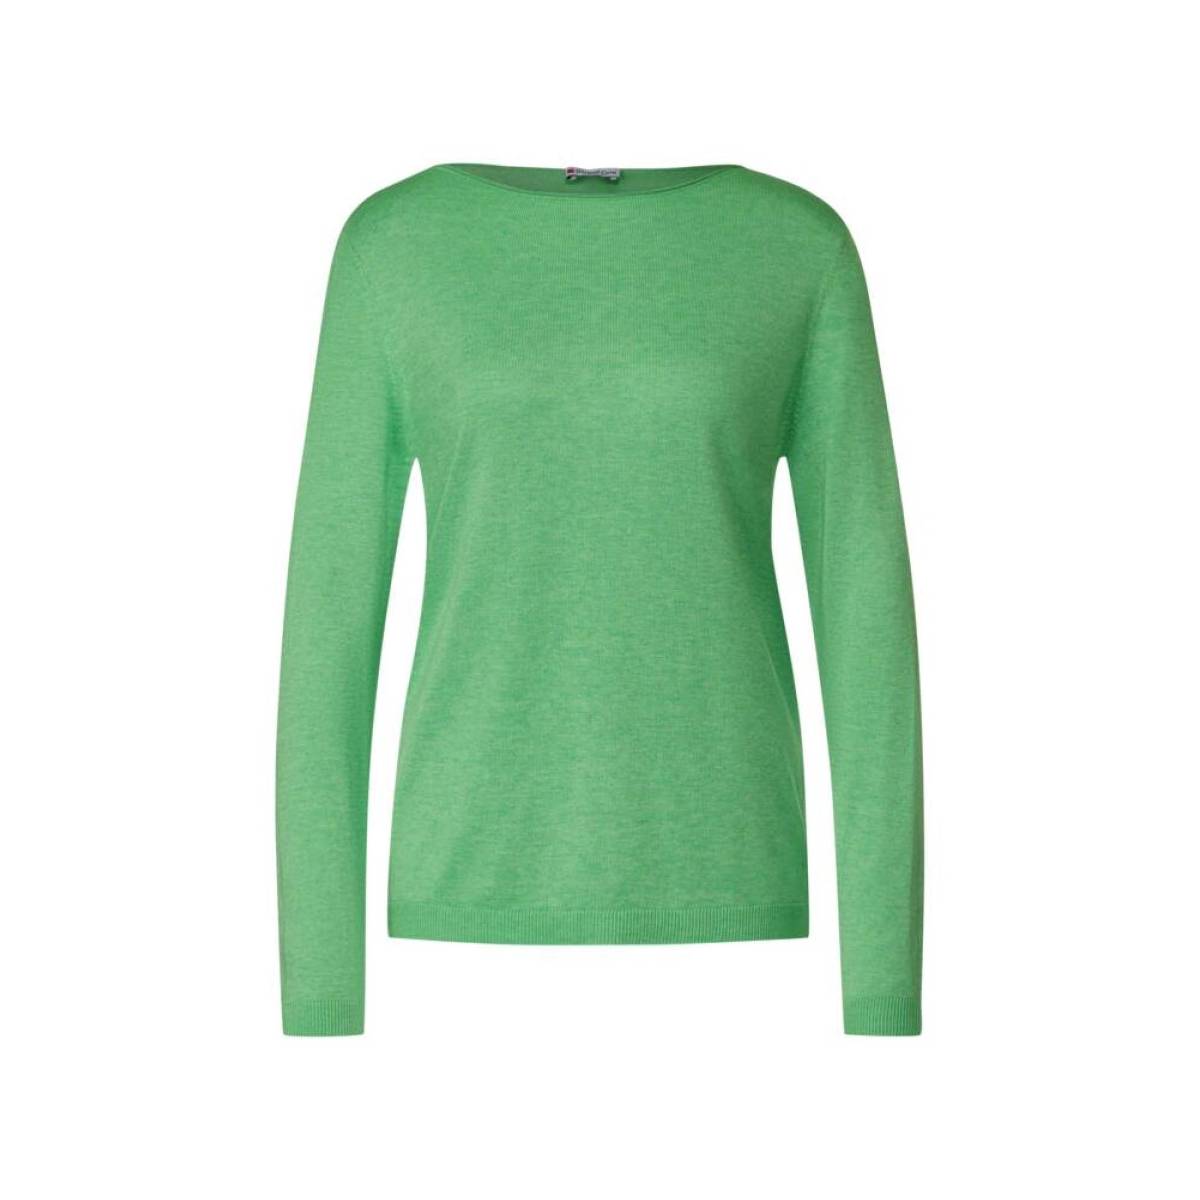 STREET ONE  tricot pull's en gilets licht groen/color -  model a302548 - Dameskleding tricot pull's en gilets groen